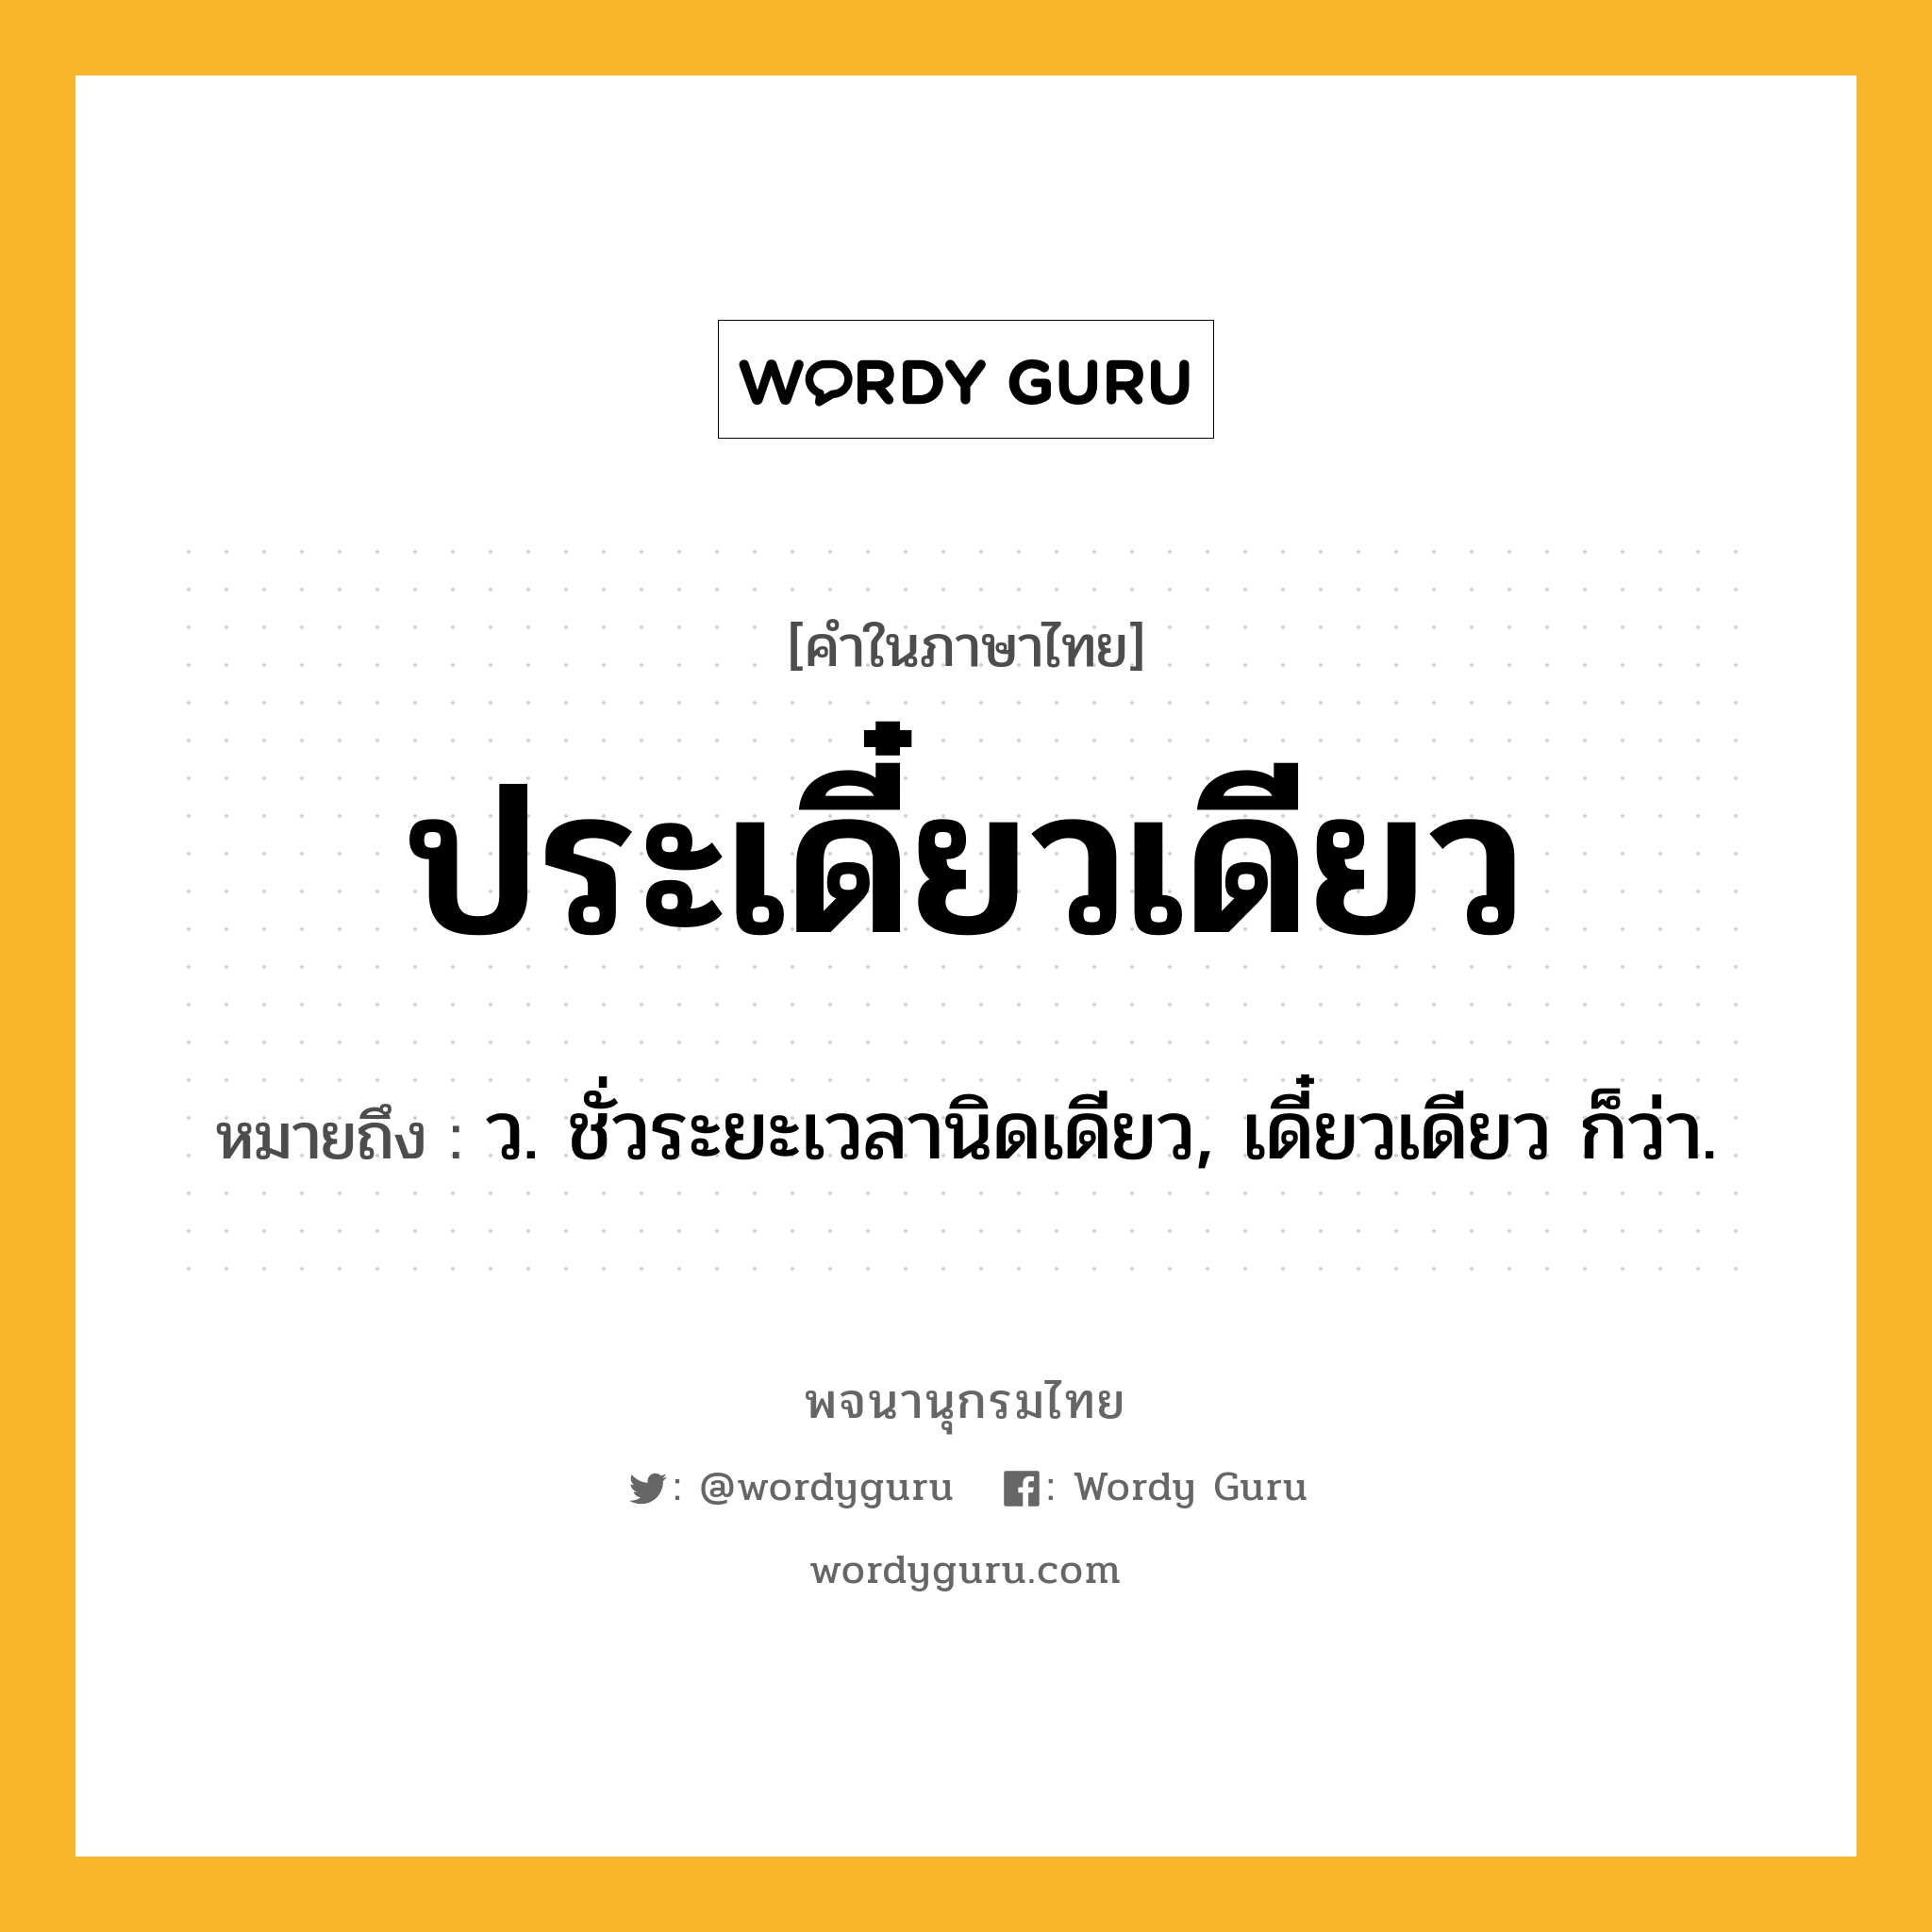 ประเดี๋ยวเดียว หมายถึงอะไร?, คำในภาษาไทย ประเดี๋ยวเดียว หมายถึง ว. ชั่วระยะเวลานิดเดียว, เดี๋ยวเดียว ก็ว่า.